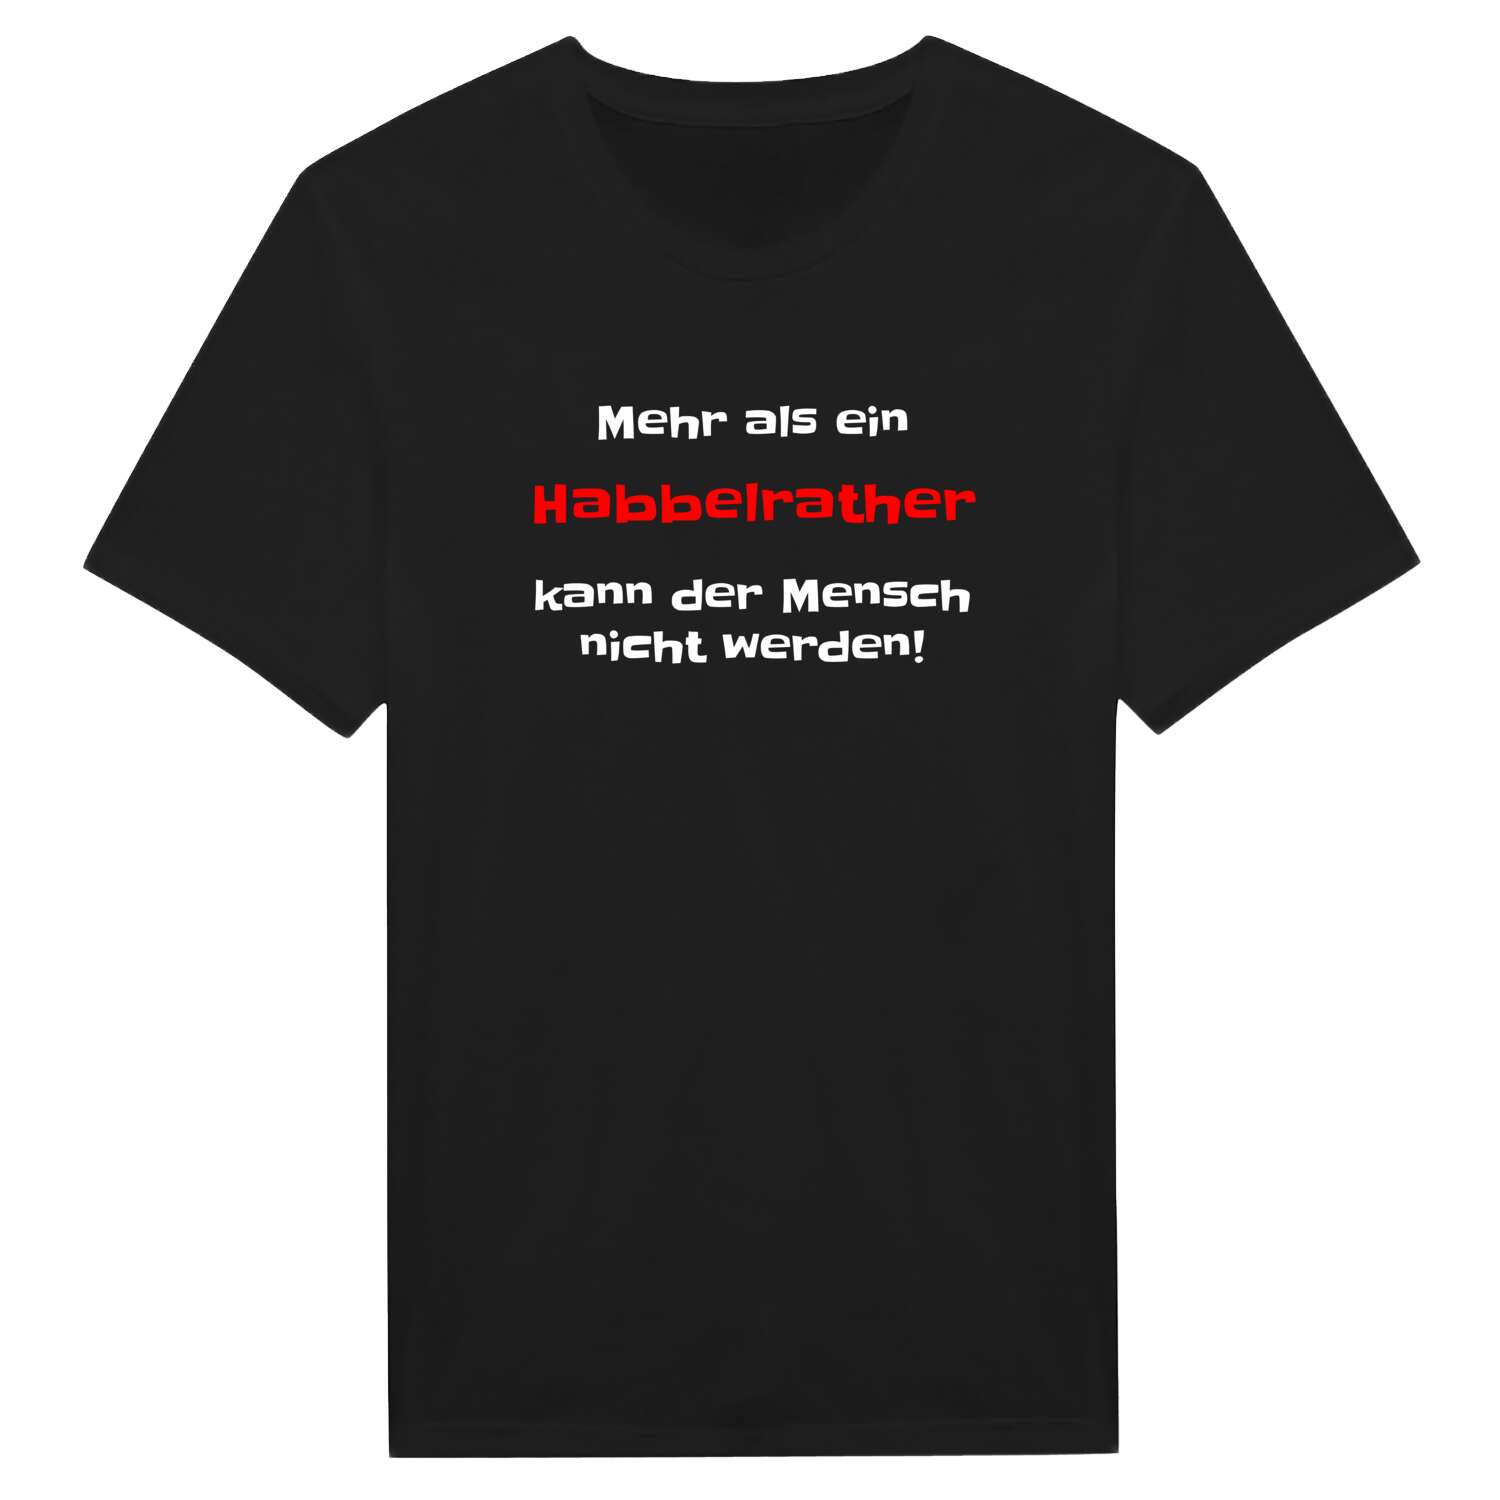 Habbelrath T-Shirt »Mehr als ein«